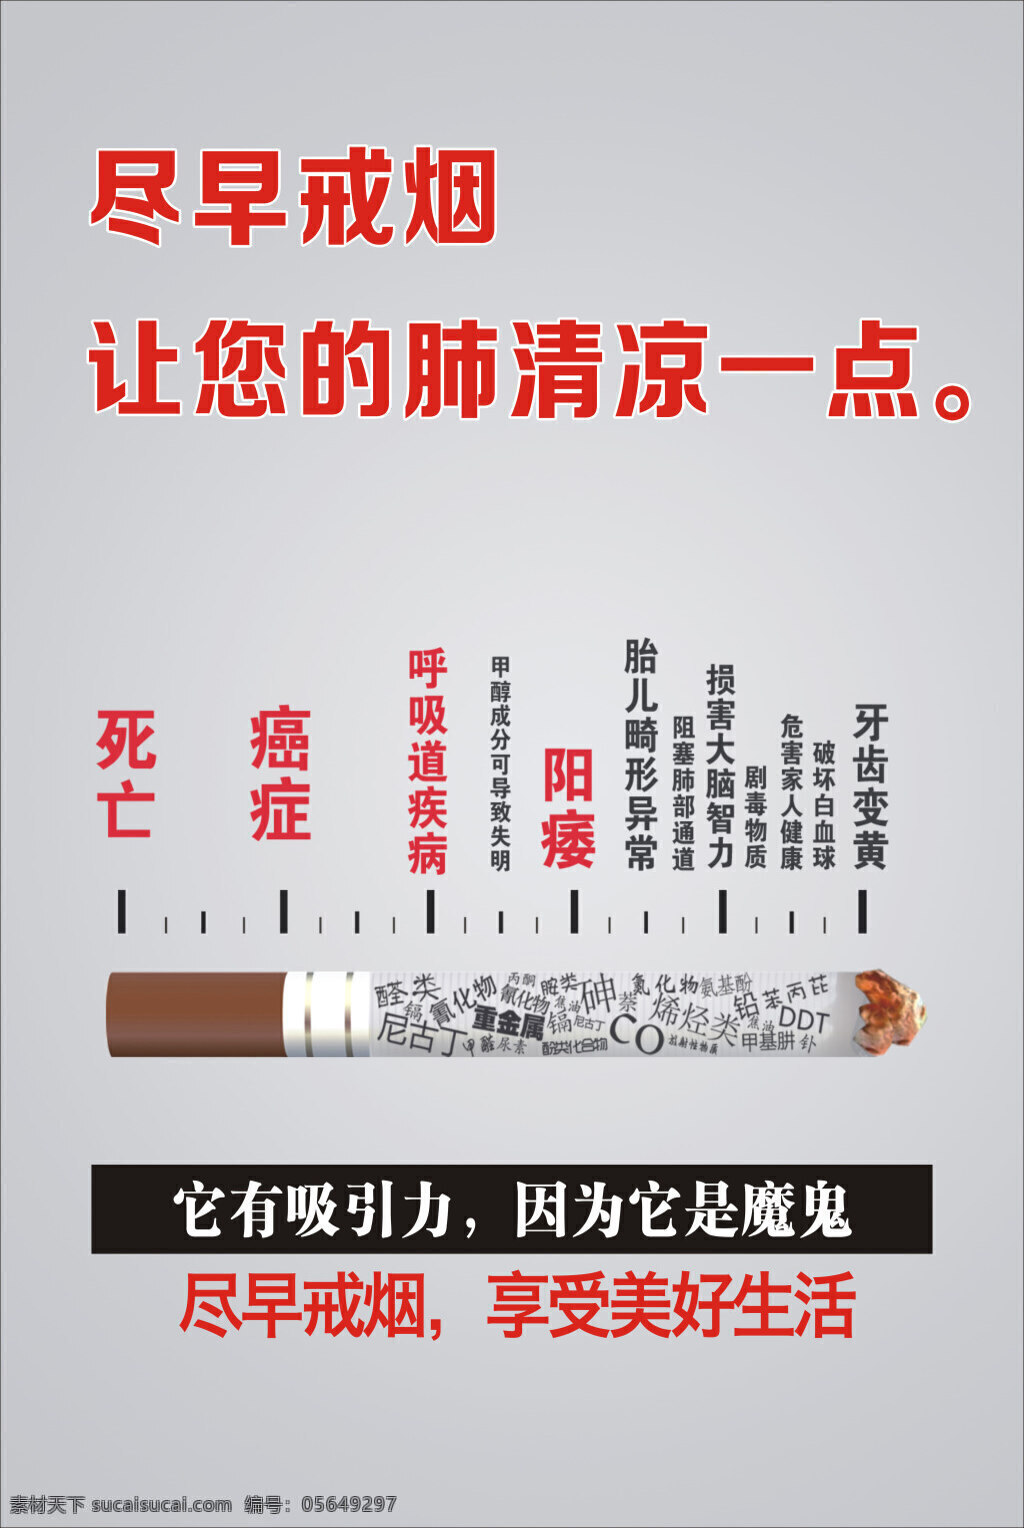 戒烟 广告 戒烟广告 戒烟海报 保护肺部 烟图标